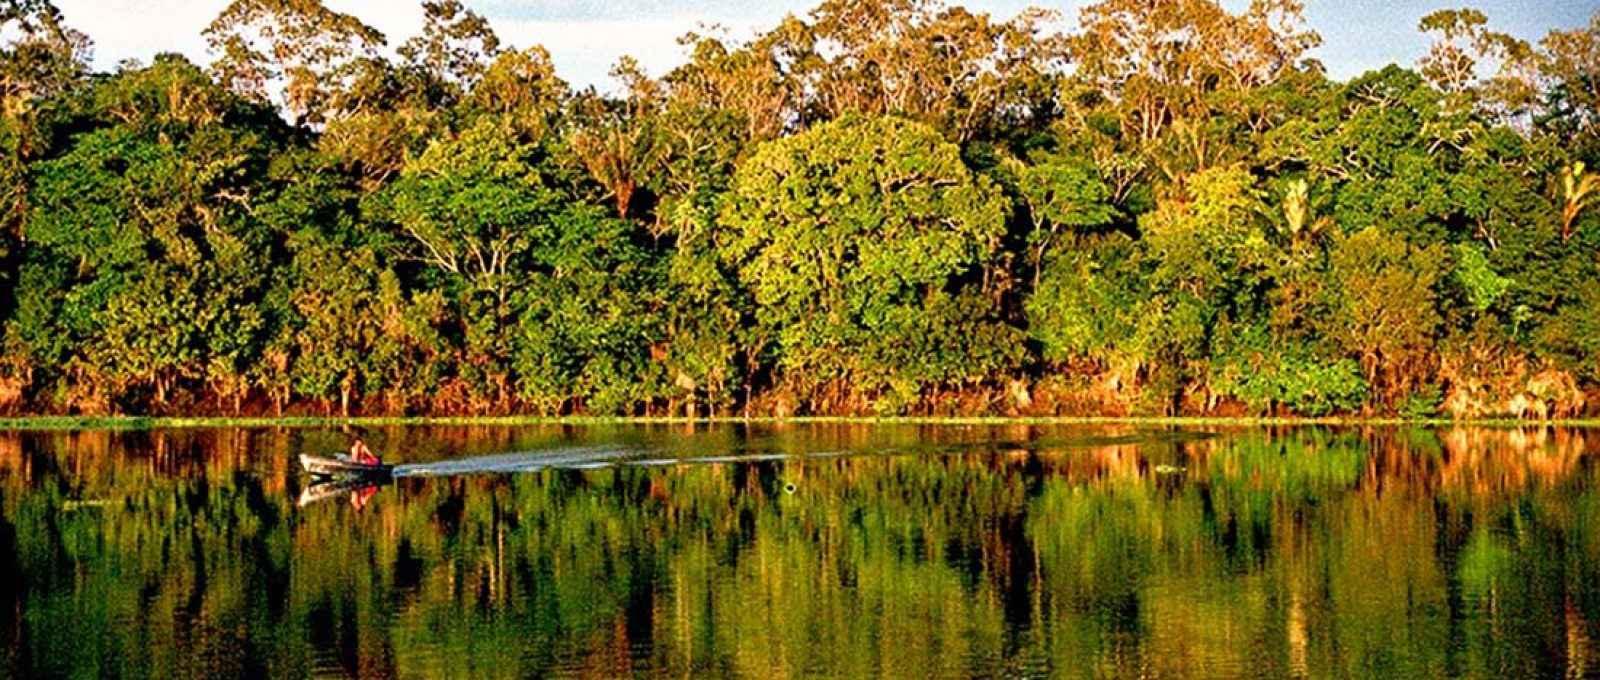 Imagem da floresta amazônica no rio Urubu, próximo ao município de Silves, no estado do Amazonas (André Deak/Wikimedia/CC BY 2.0).